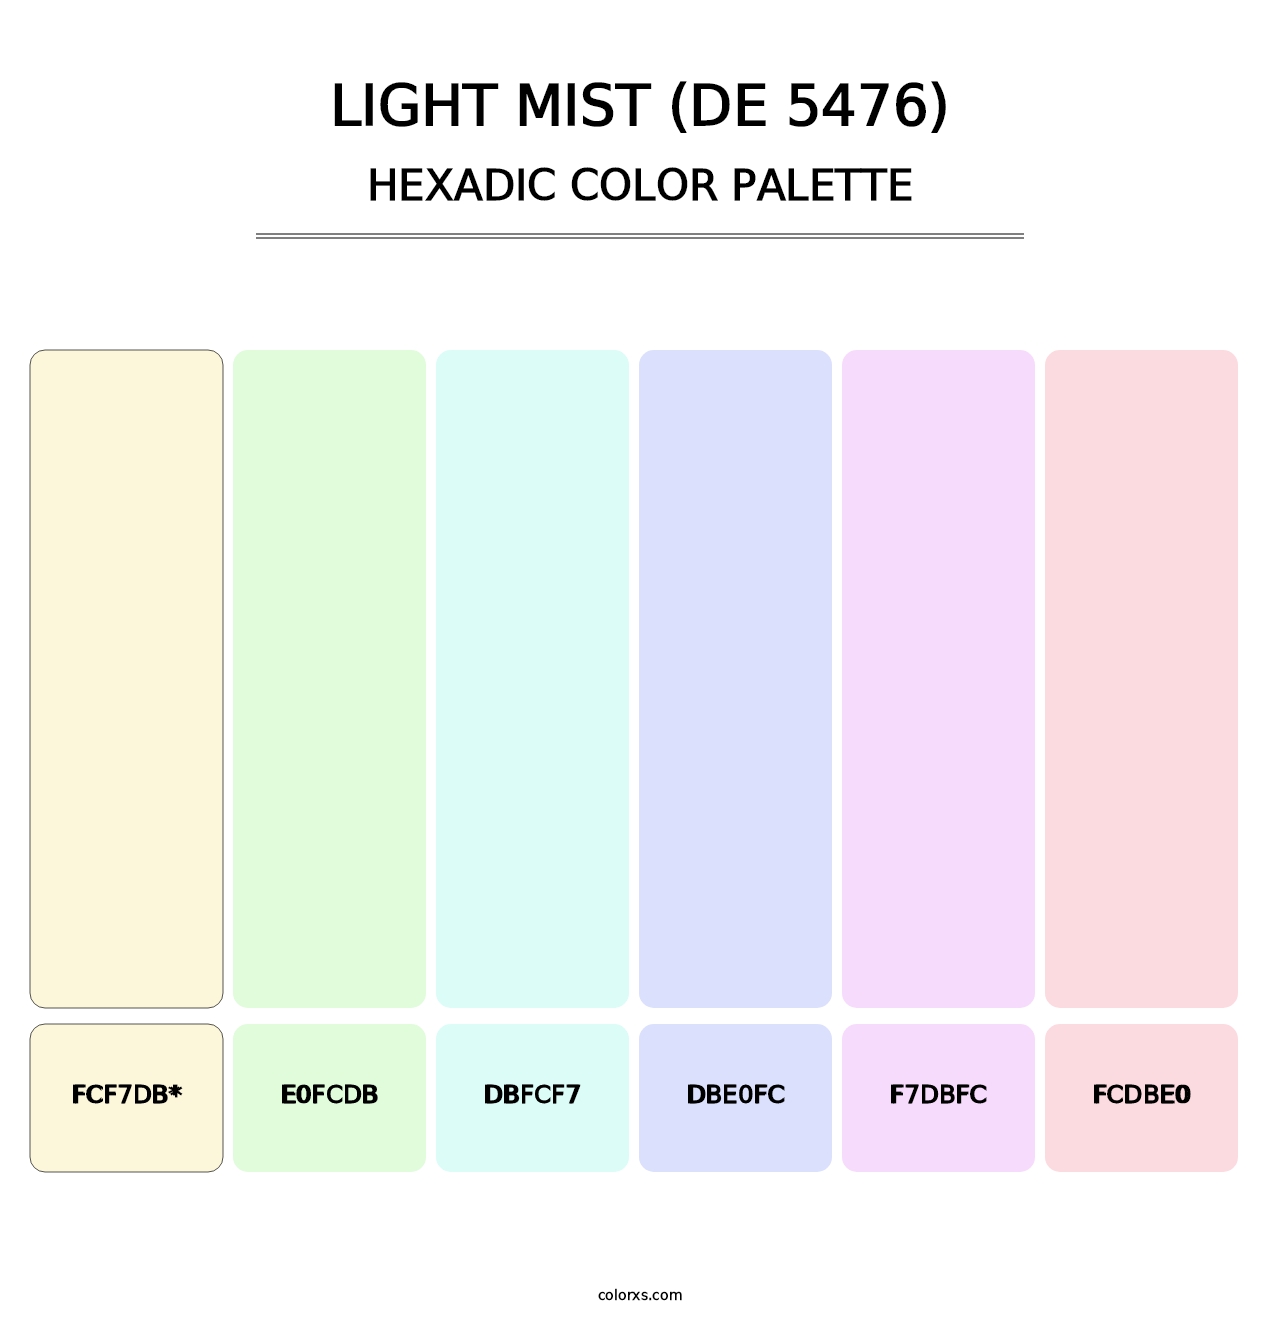 Light Mist (DE 5476) - Hexadic Color Palette